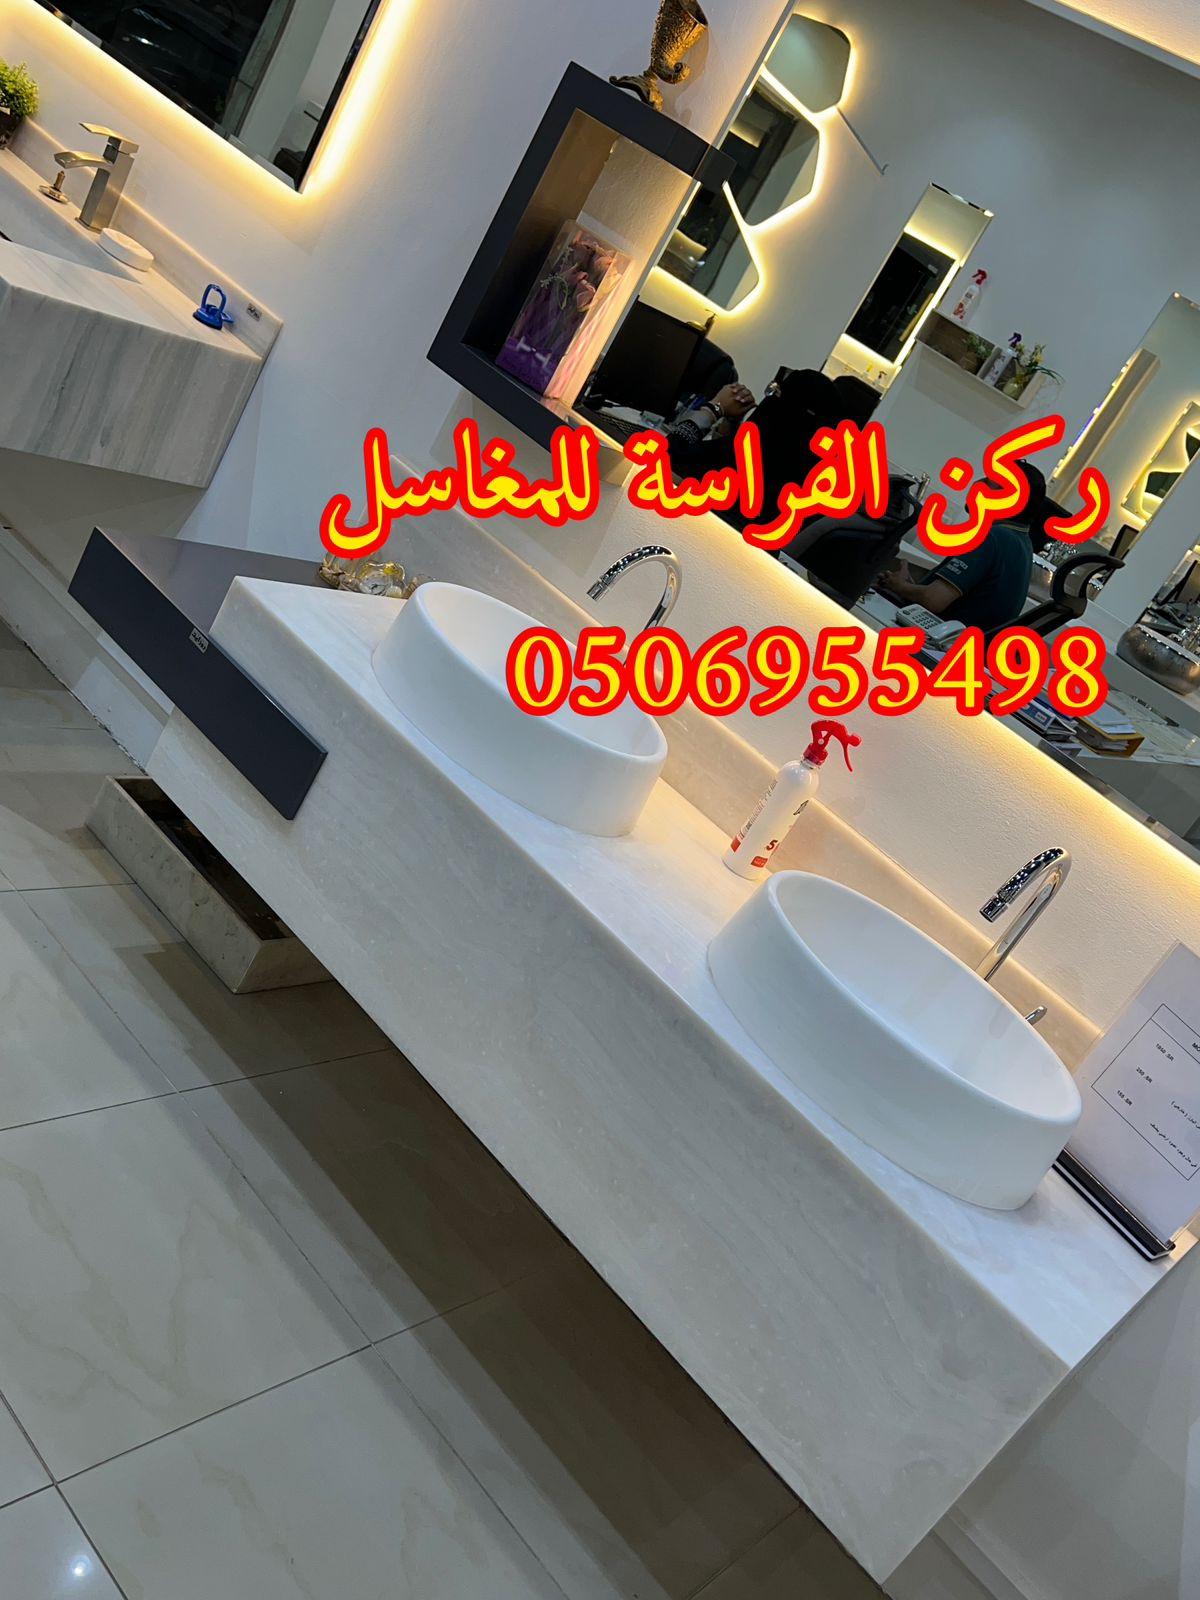 الرياض - مغاسل حمامات رخام مودرن فخمة في الرياض,0506955498 417722765